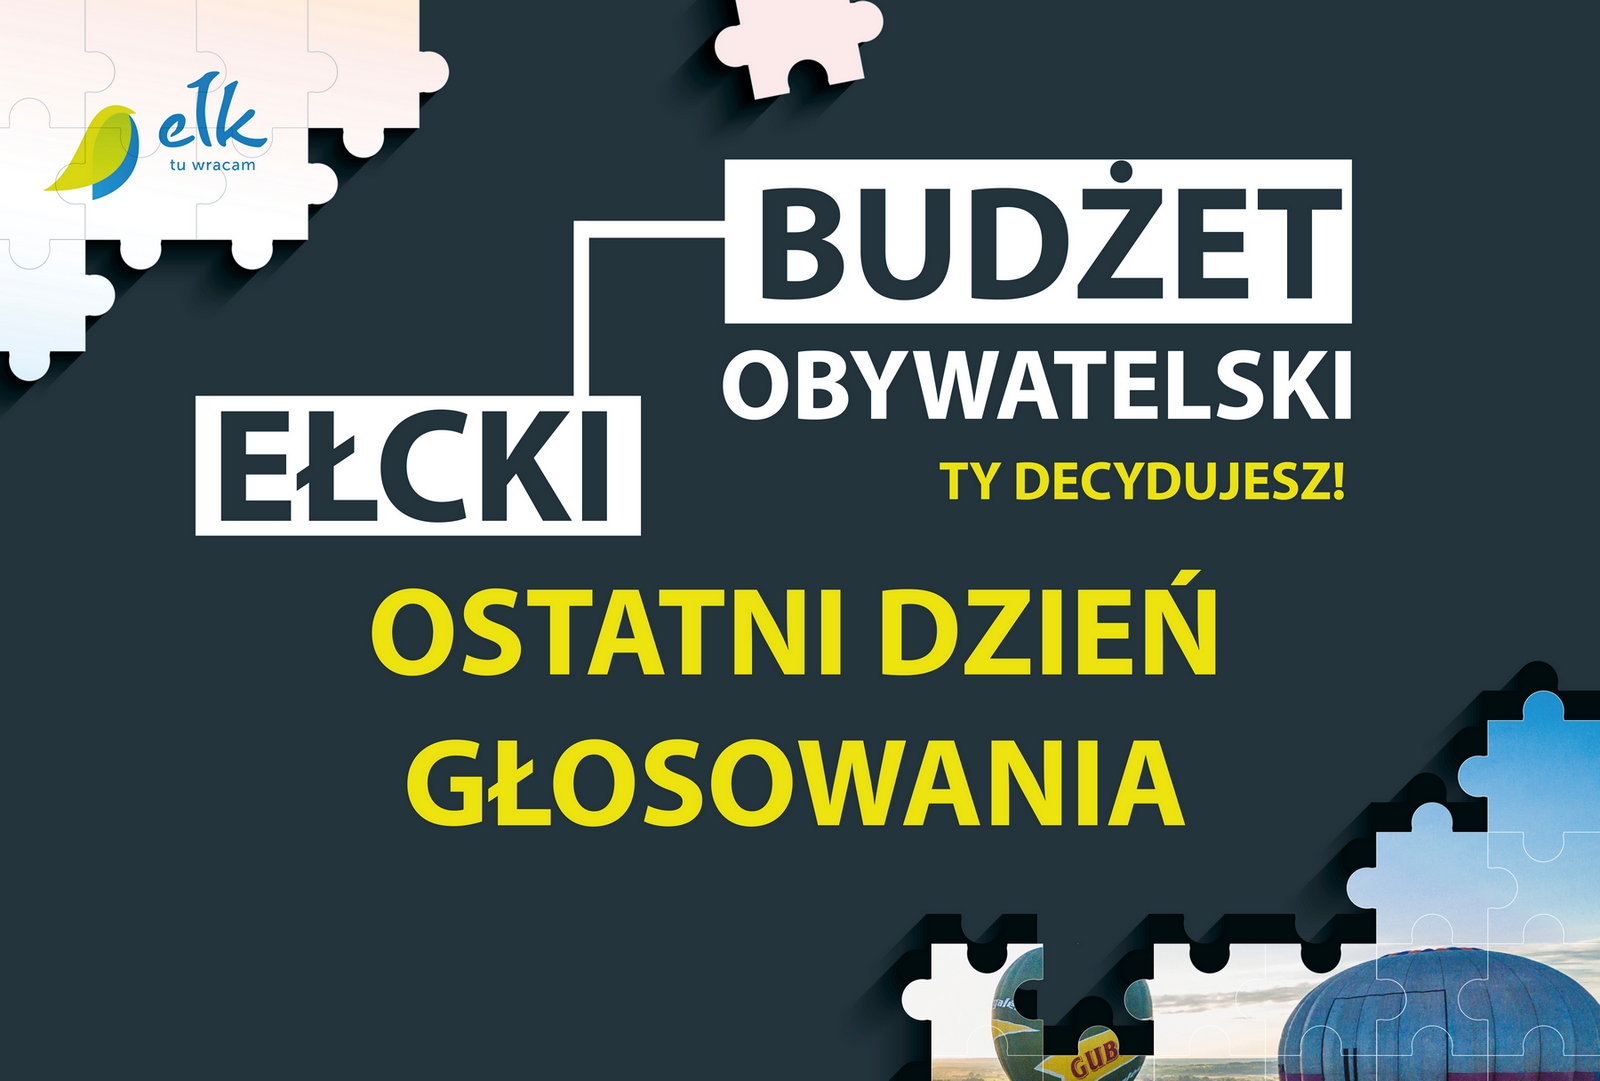 Ełk Civic Budget – останній день голосування